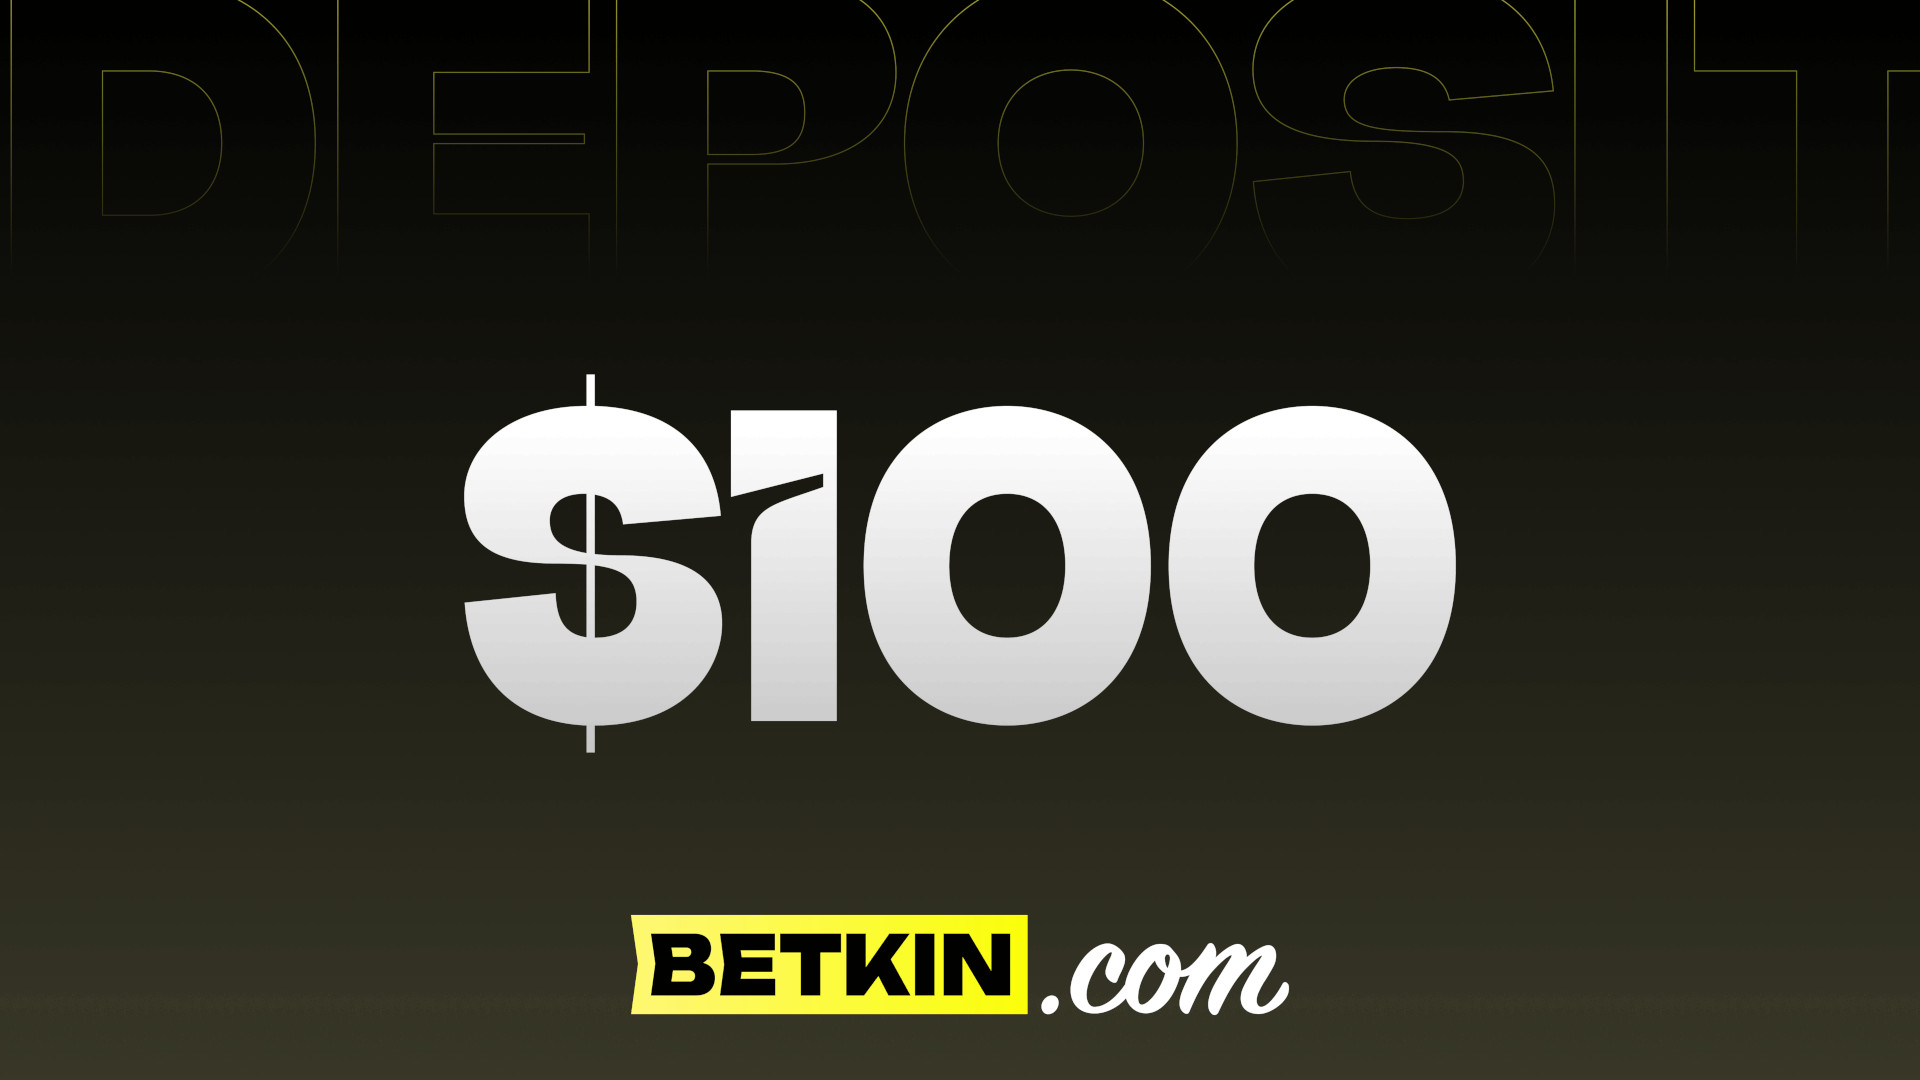 Betkin $100 Coupon $111.35